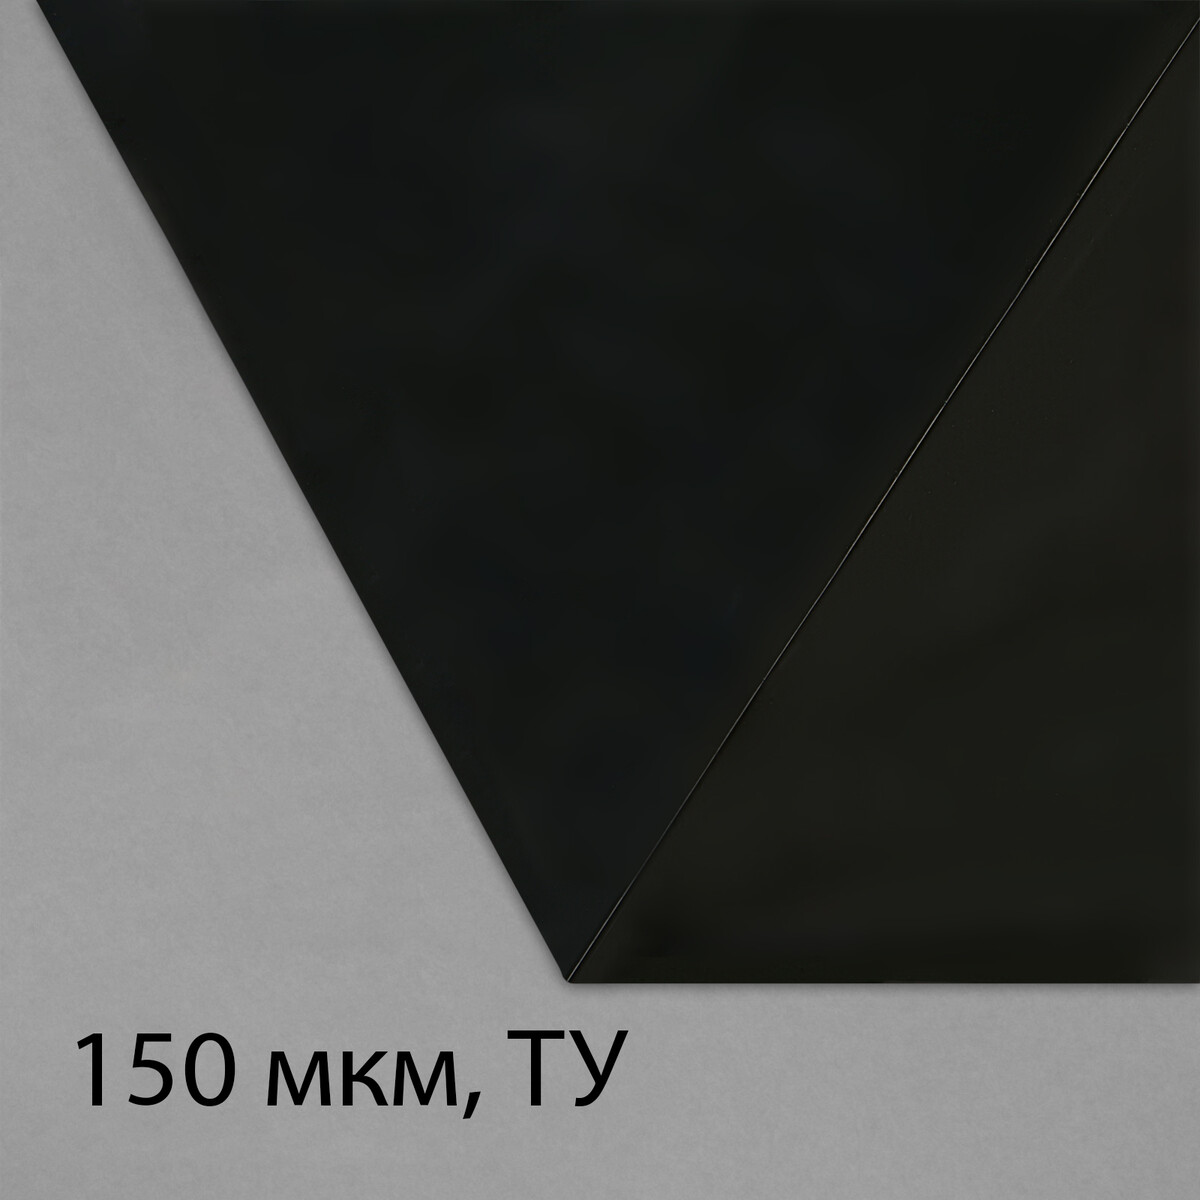 Пленка из полиэтилена, техническая, толщина 150 мкм, черная, 5 × 3 м, рукав (1.5 м × 2), эконом 50%, для дома и сада пленка полиэтиленовая толщина 200 мкм прозрачная 5 × 3 м рукав 1 5 × 2 м эконом 50%